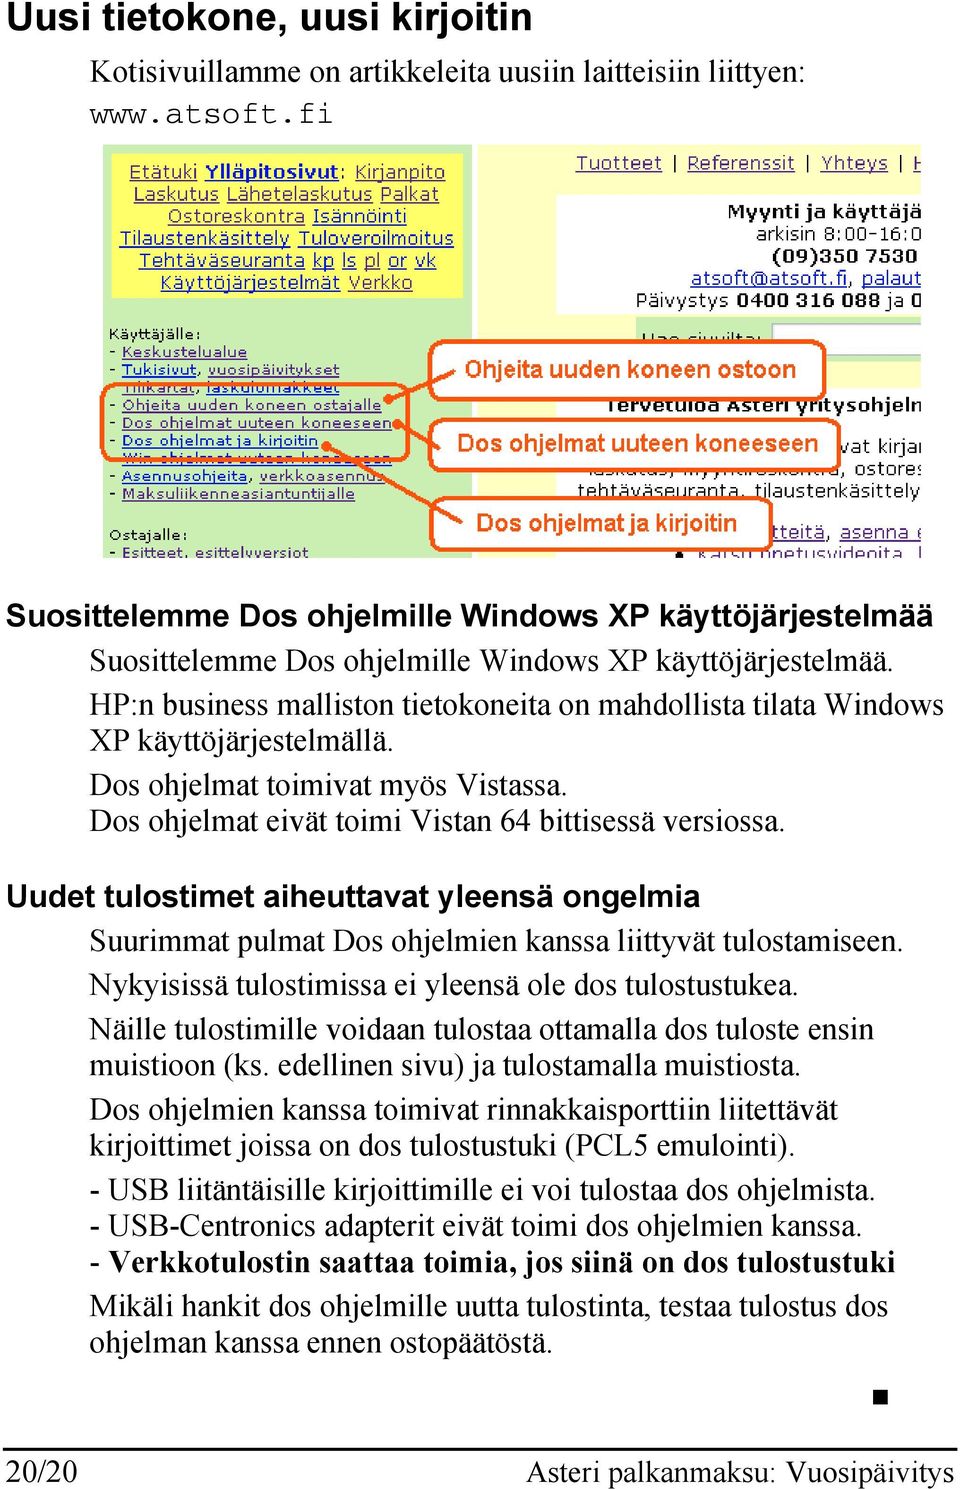 HP:n business malliston tietokoneita on mahdollista tilata Windows XP käyttöjärjestelmällä. Dos ohjelmat toimivat myös Vistassa. Dos ohjelmat eivät toimi Vistan 64 bittisessä versiossa.